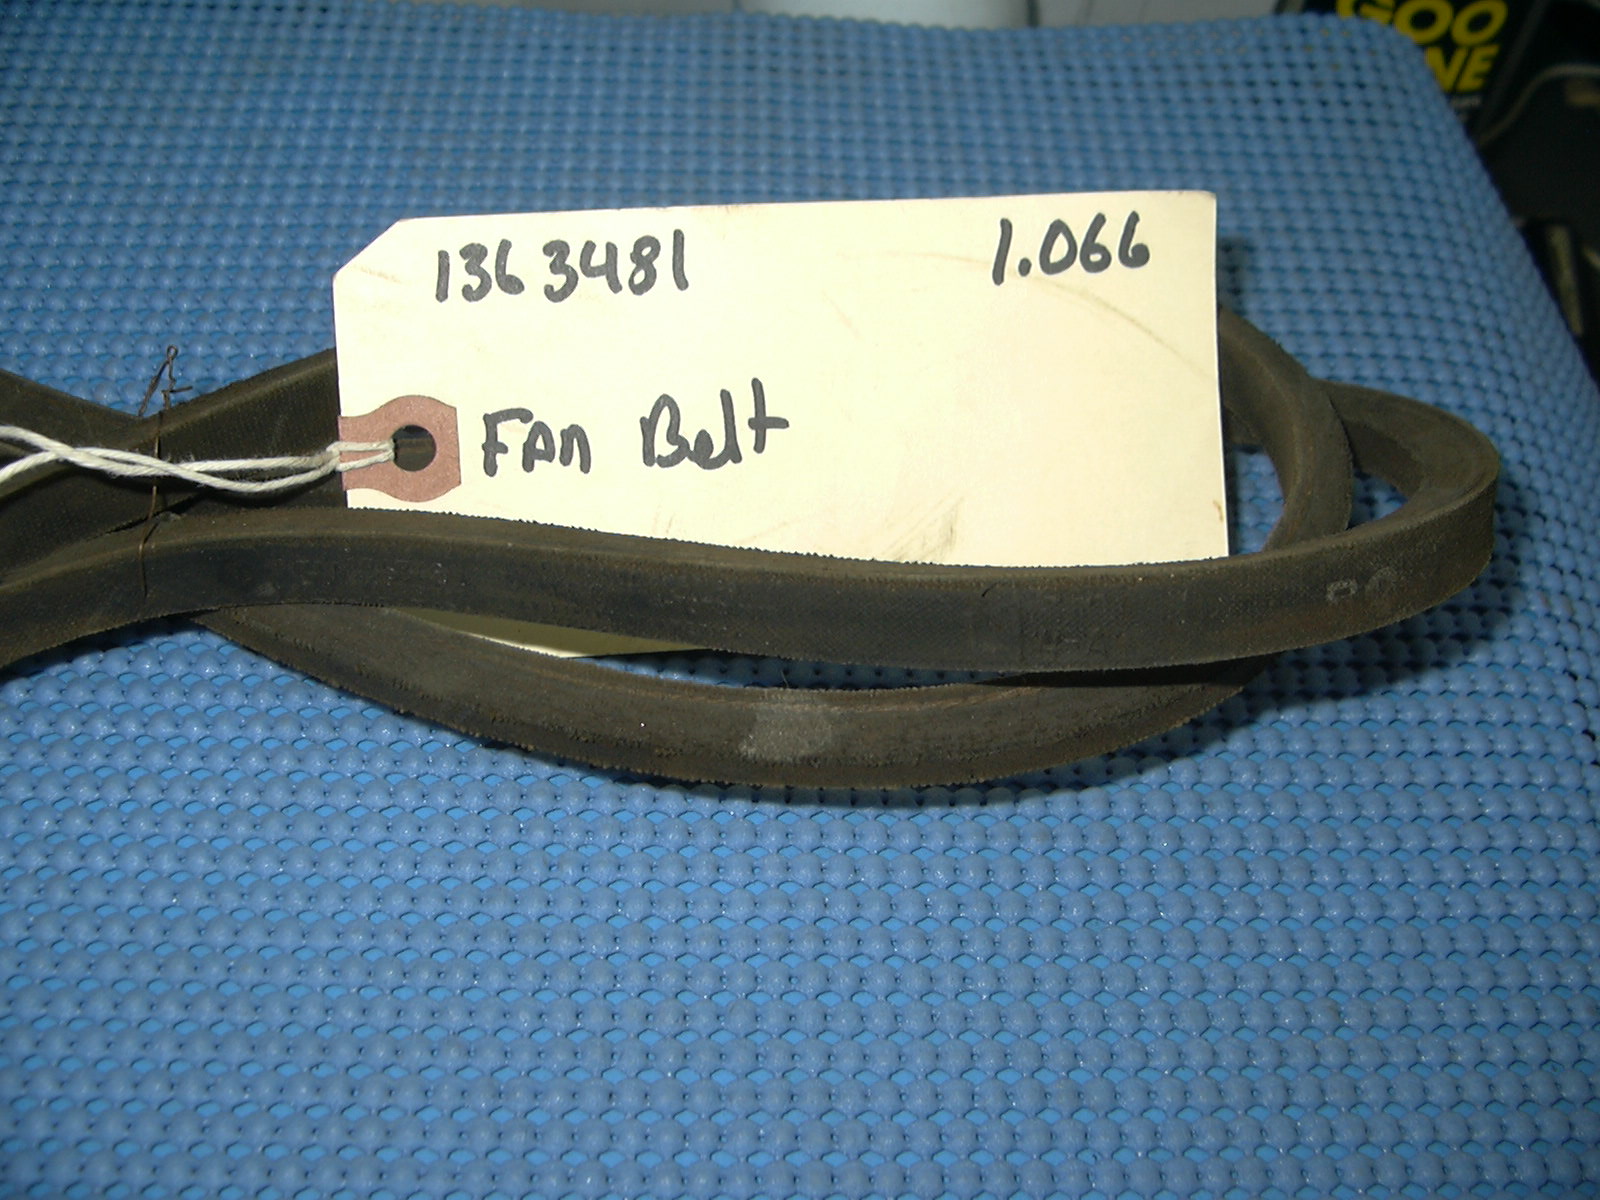 1966 - 1967 Oldsmobile Fan Belt NOS # 1363481